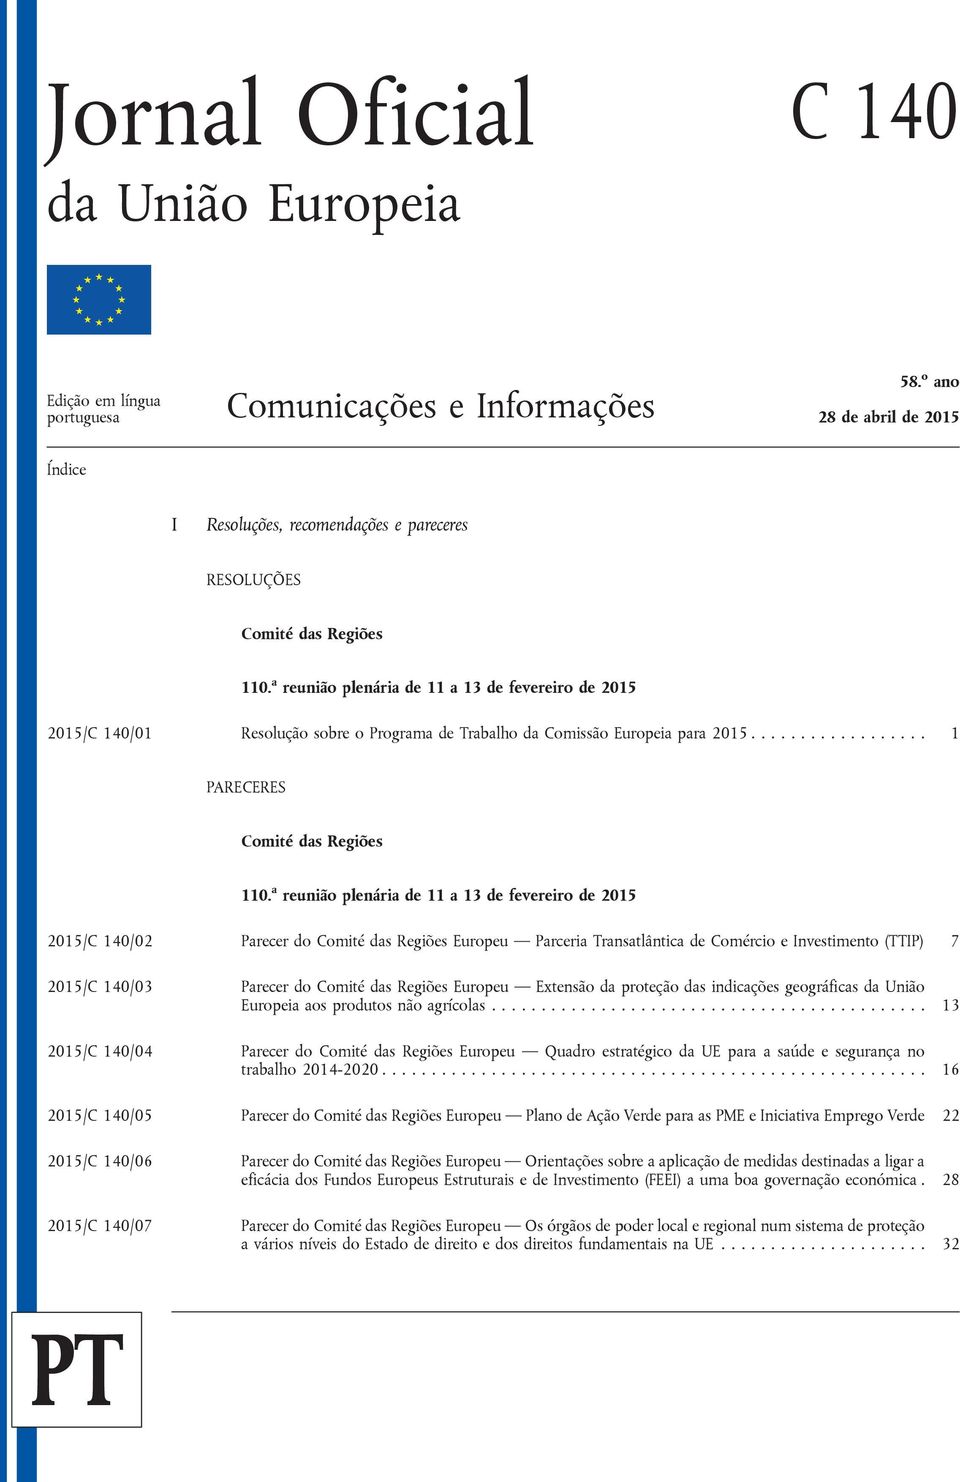 a reunião plenária de 11 a 13 de fevereiro de 2015 2015/C 140/01 Resolução sobre o Programa de Trabalho da Comissão Europeia para 2015.................. 1 PARECERES Comité das Regiões 110.